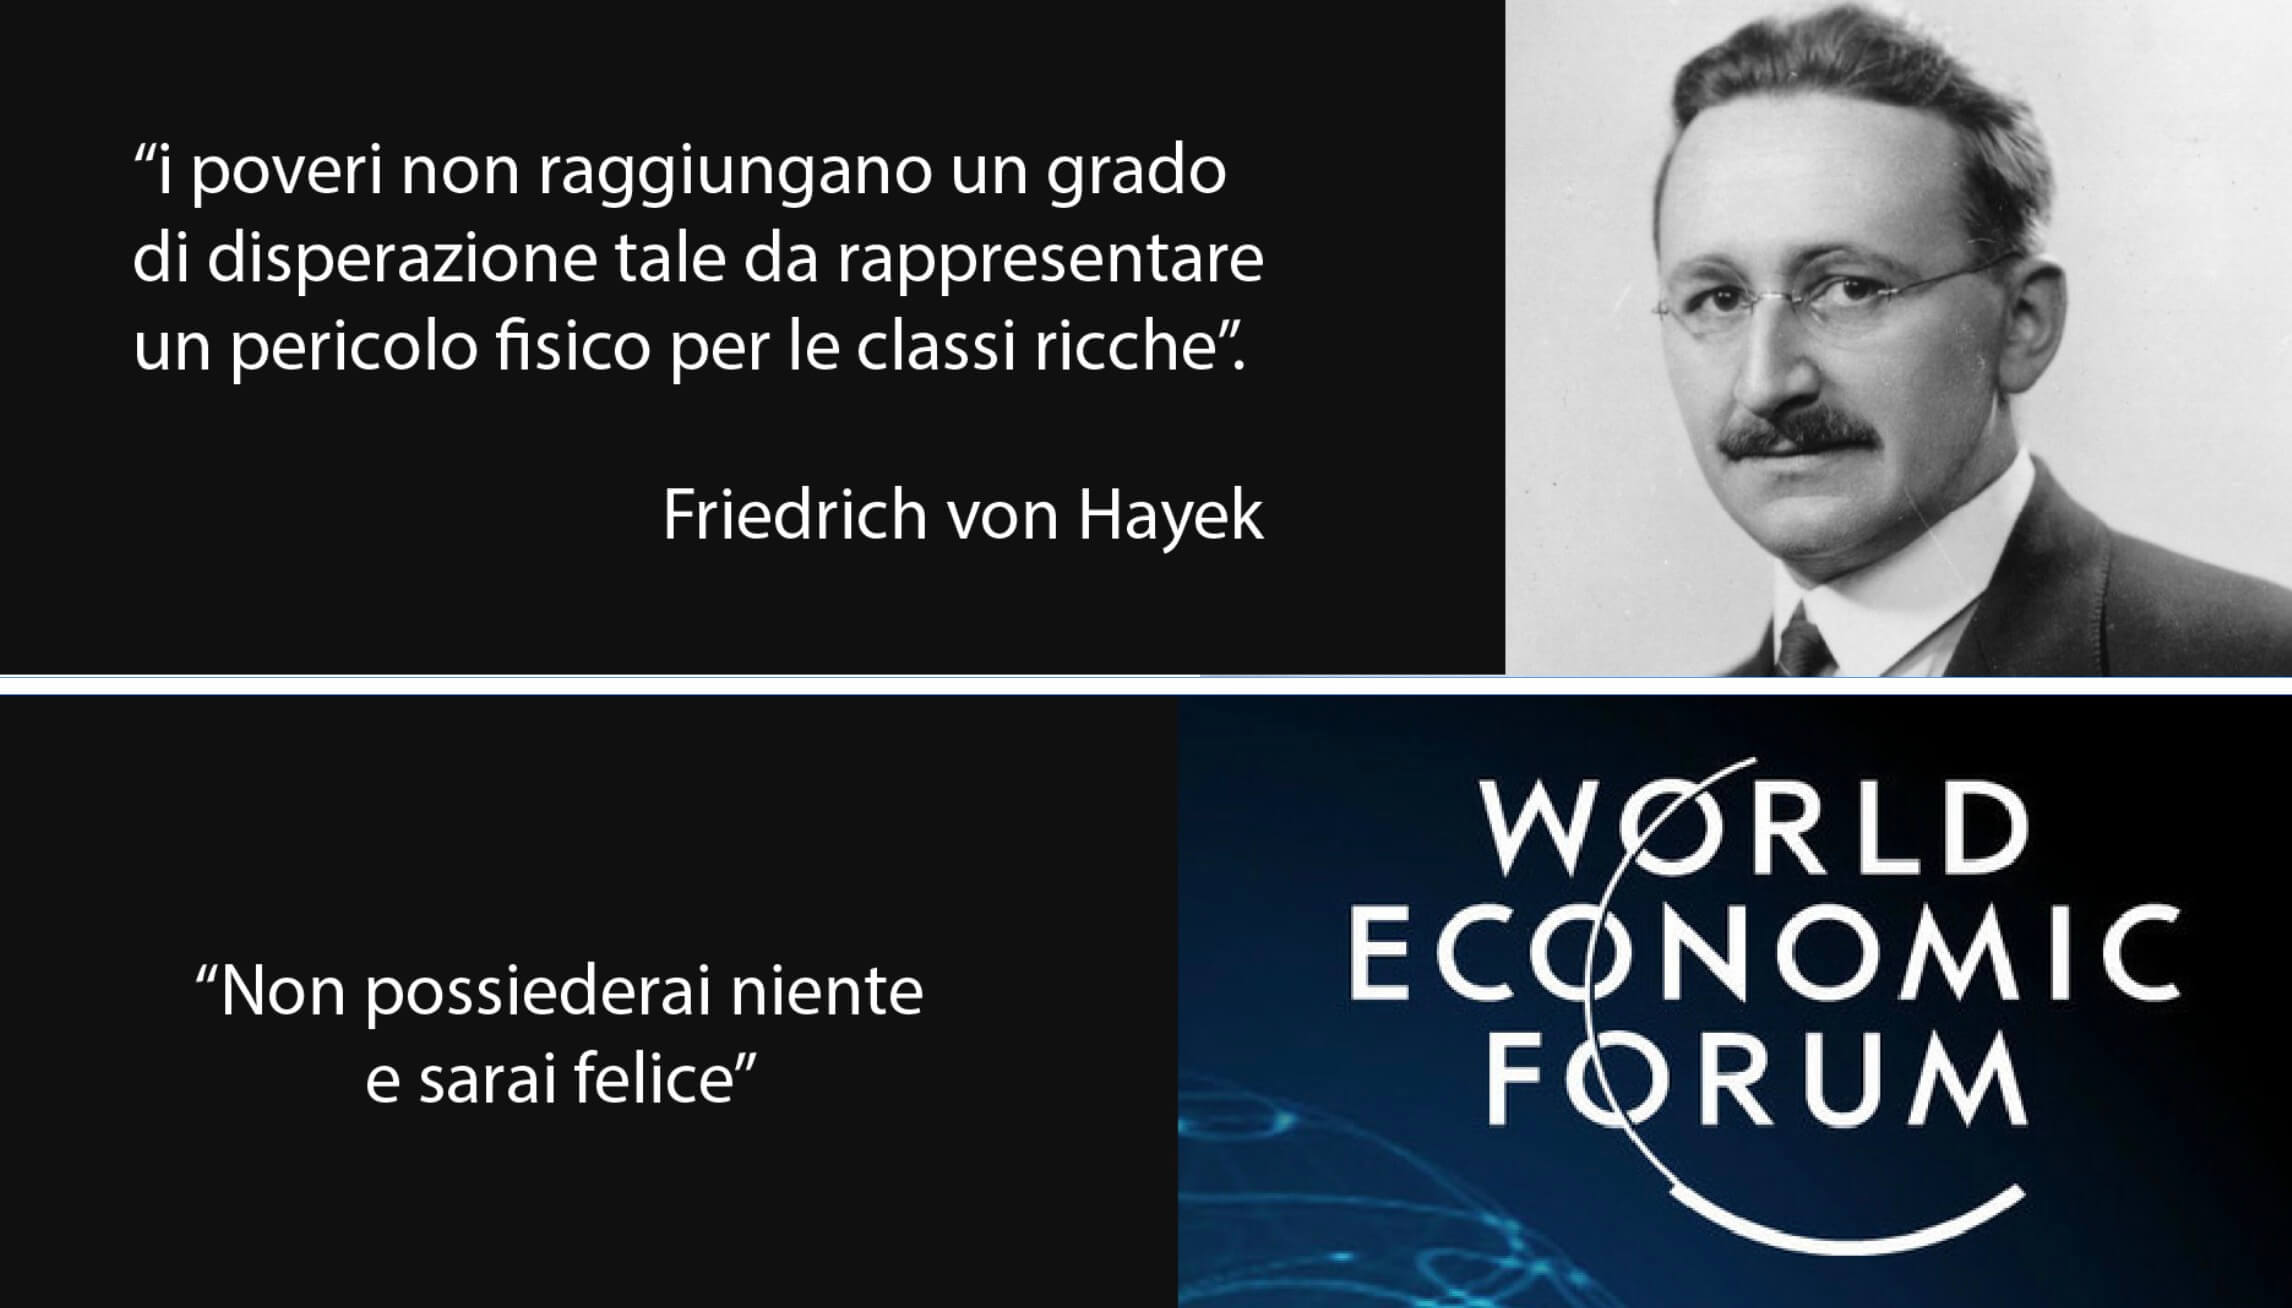 von Hayek e il reddito universale incondizionato